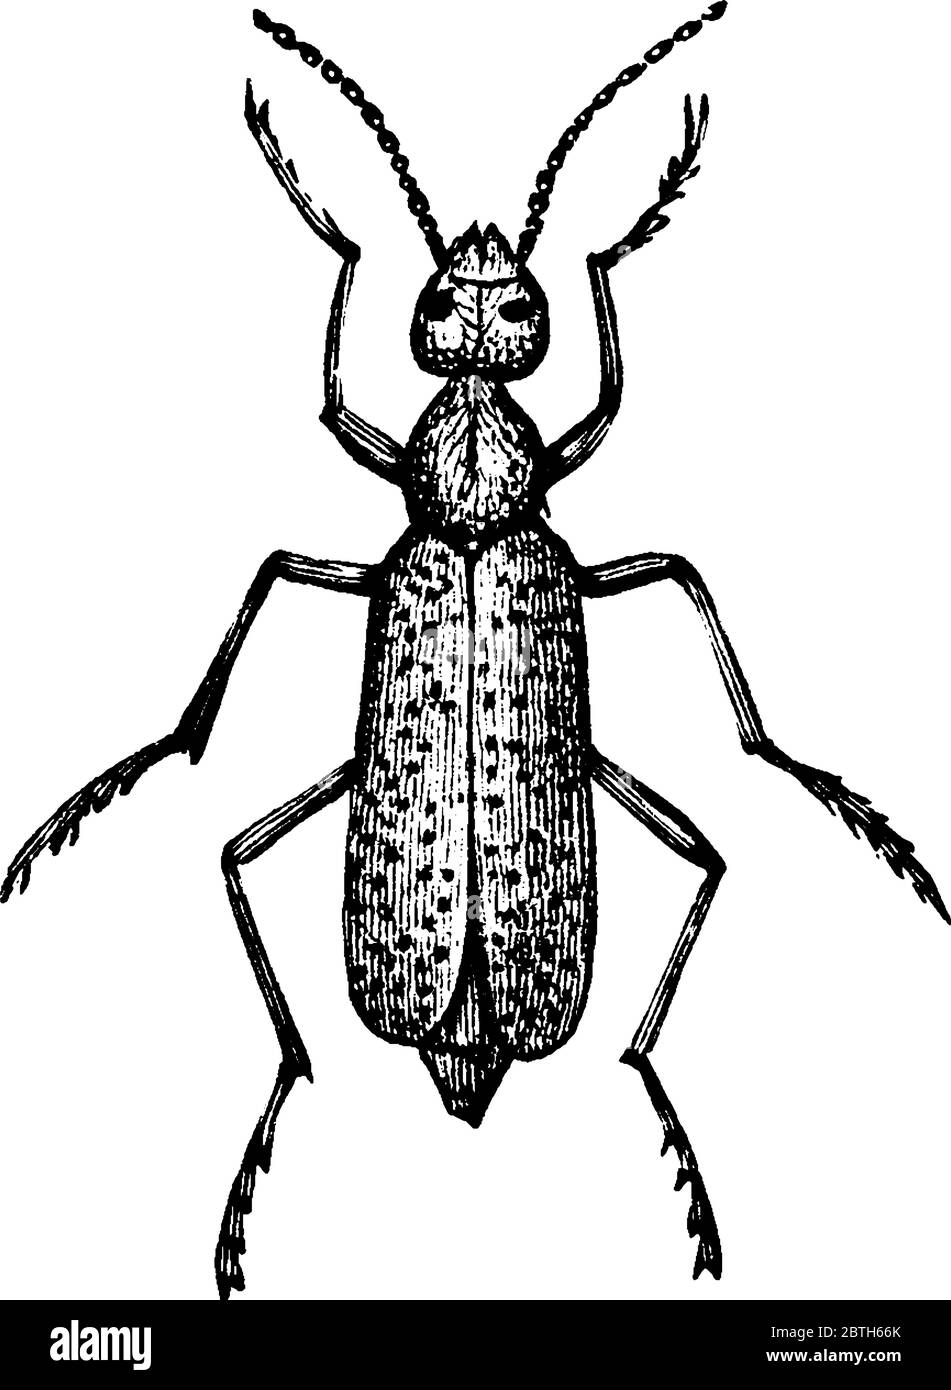 Una specie di vescicole nella famiglia Meloidae, disegno di linea d'annata o illustrazione dell'incisione. Illustrazione Vettoriale